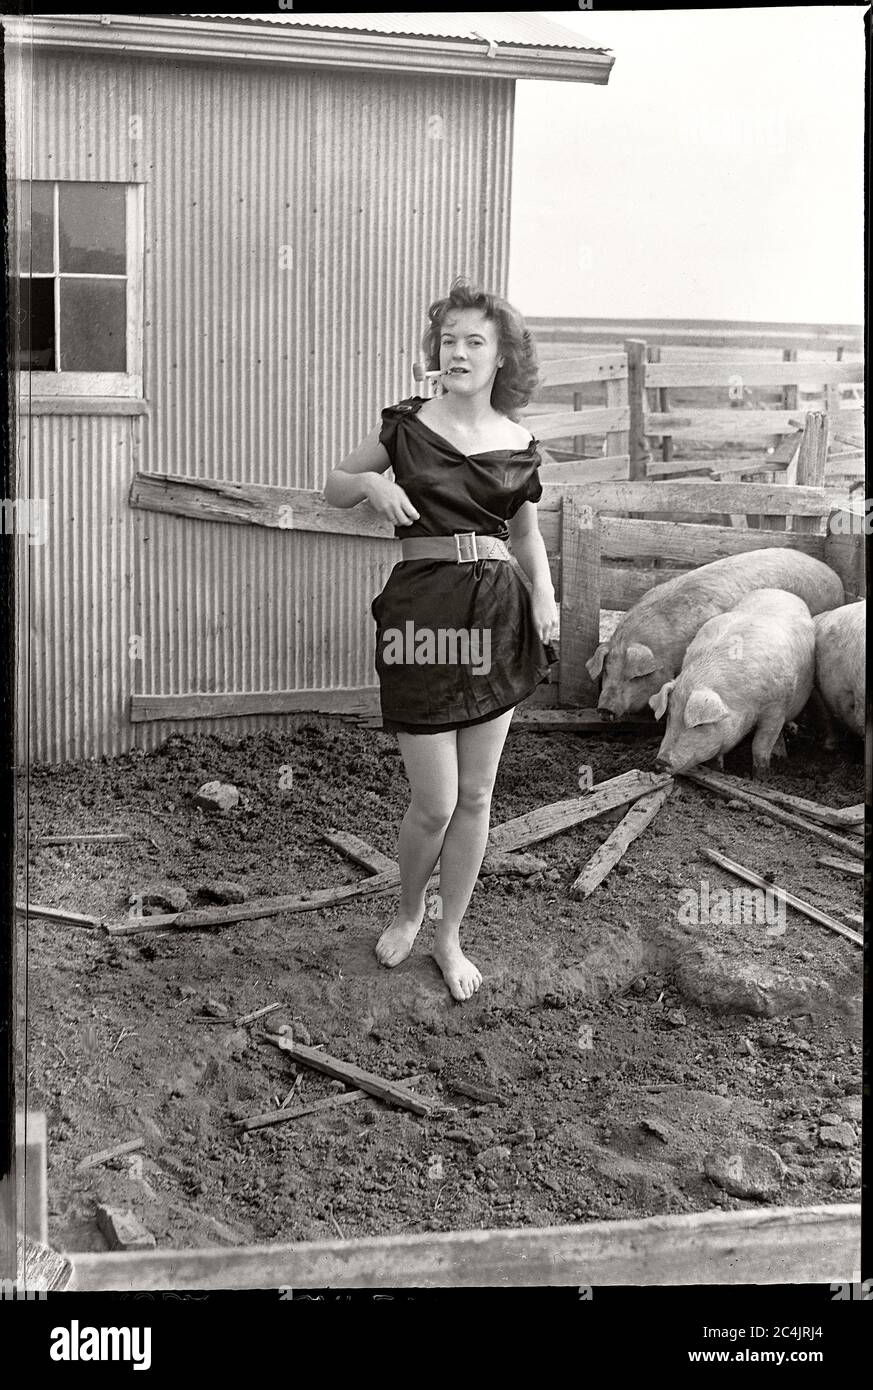 Fattoria a piedi nudi ragazza in abito nero fumo di un tubo in una stia di maiale, circa 1950. Immagine da 2x3 pollici negativo. Foto Stock